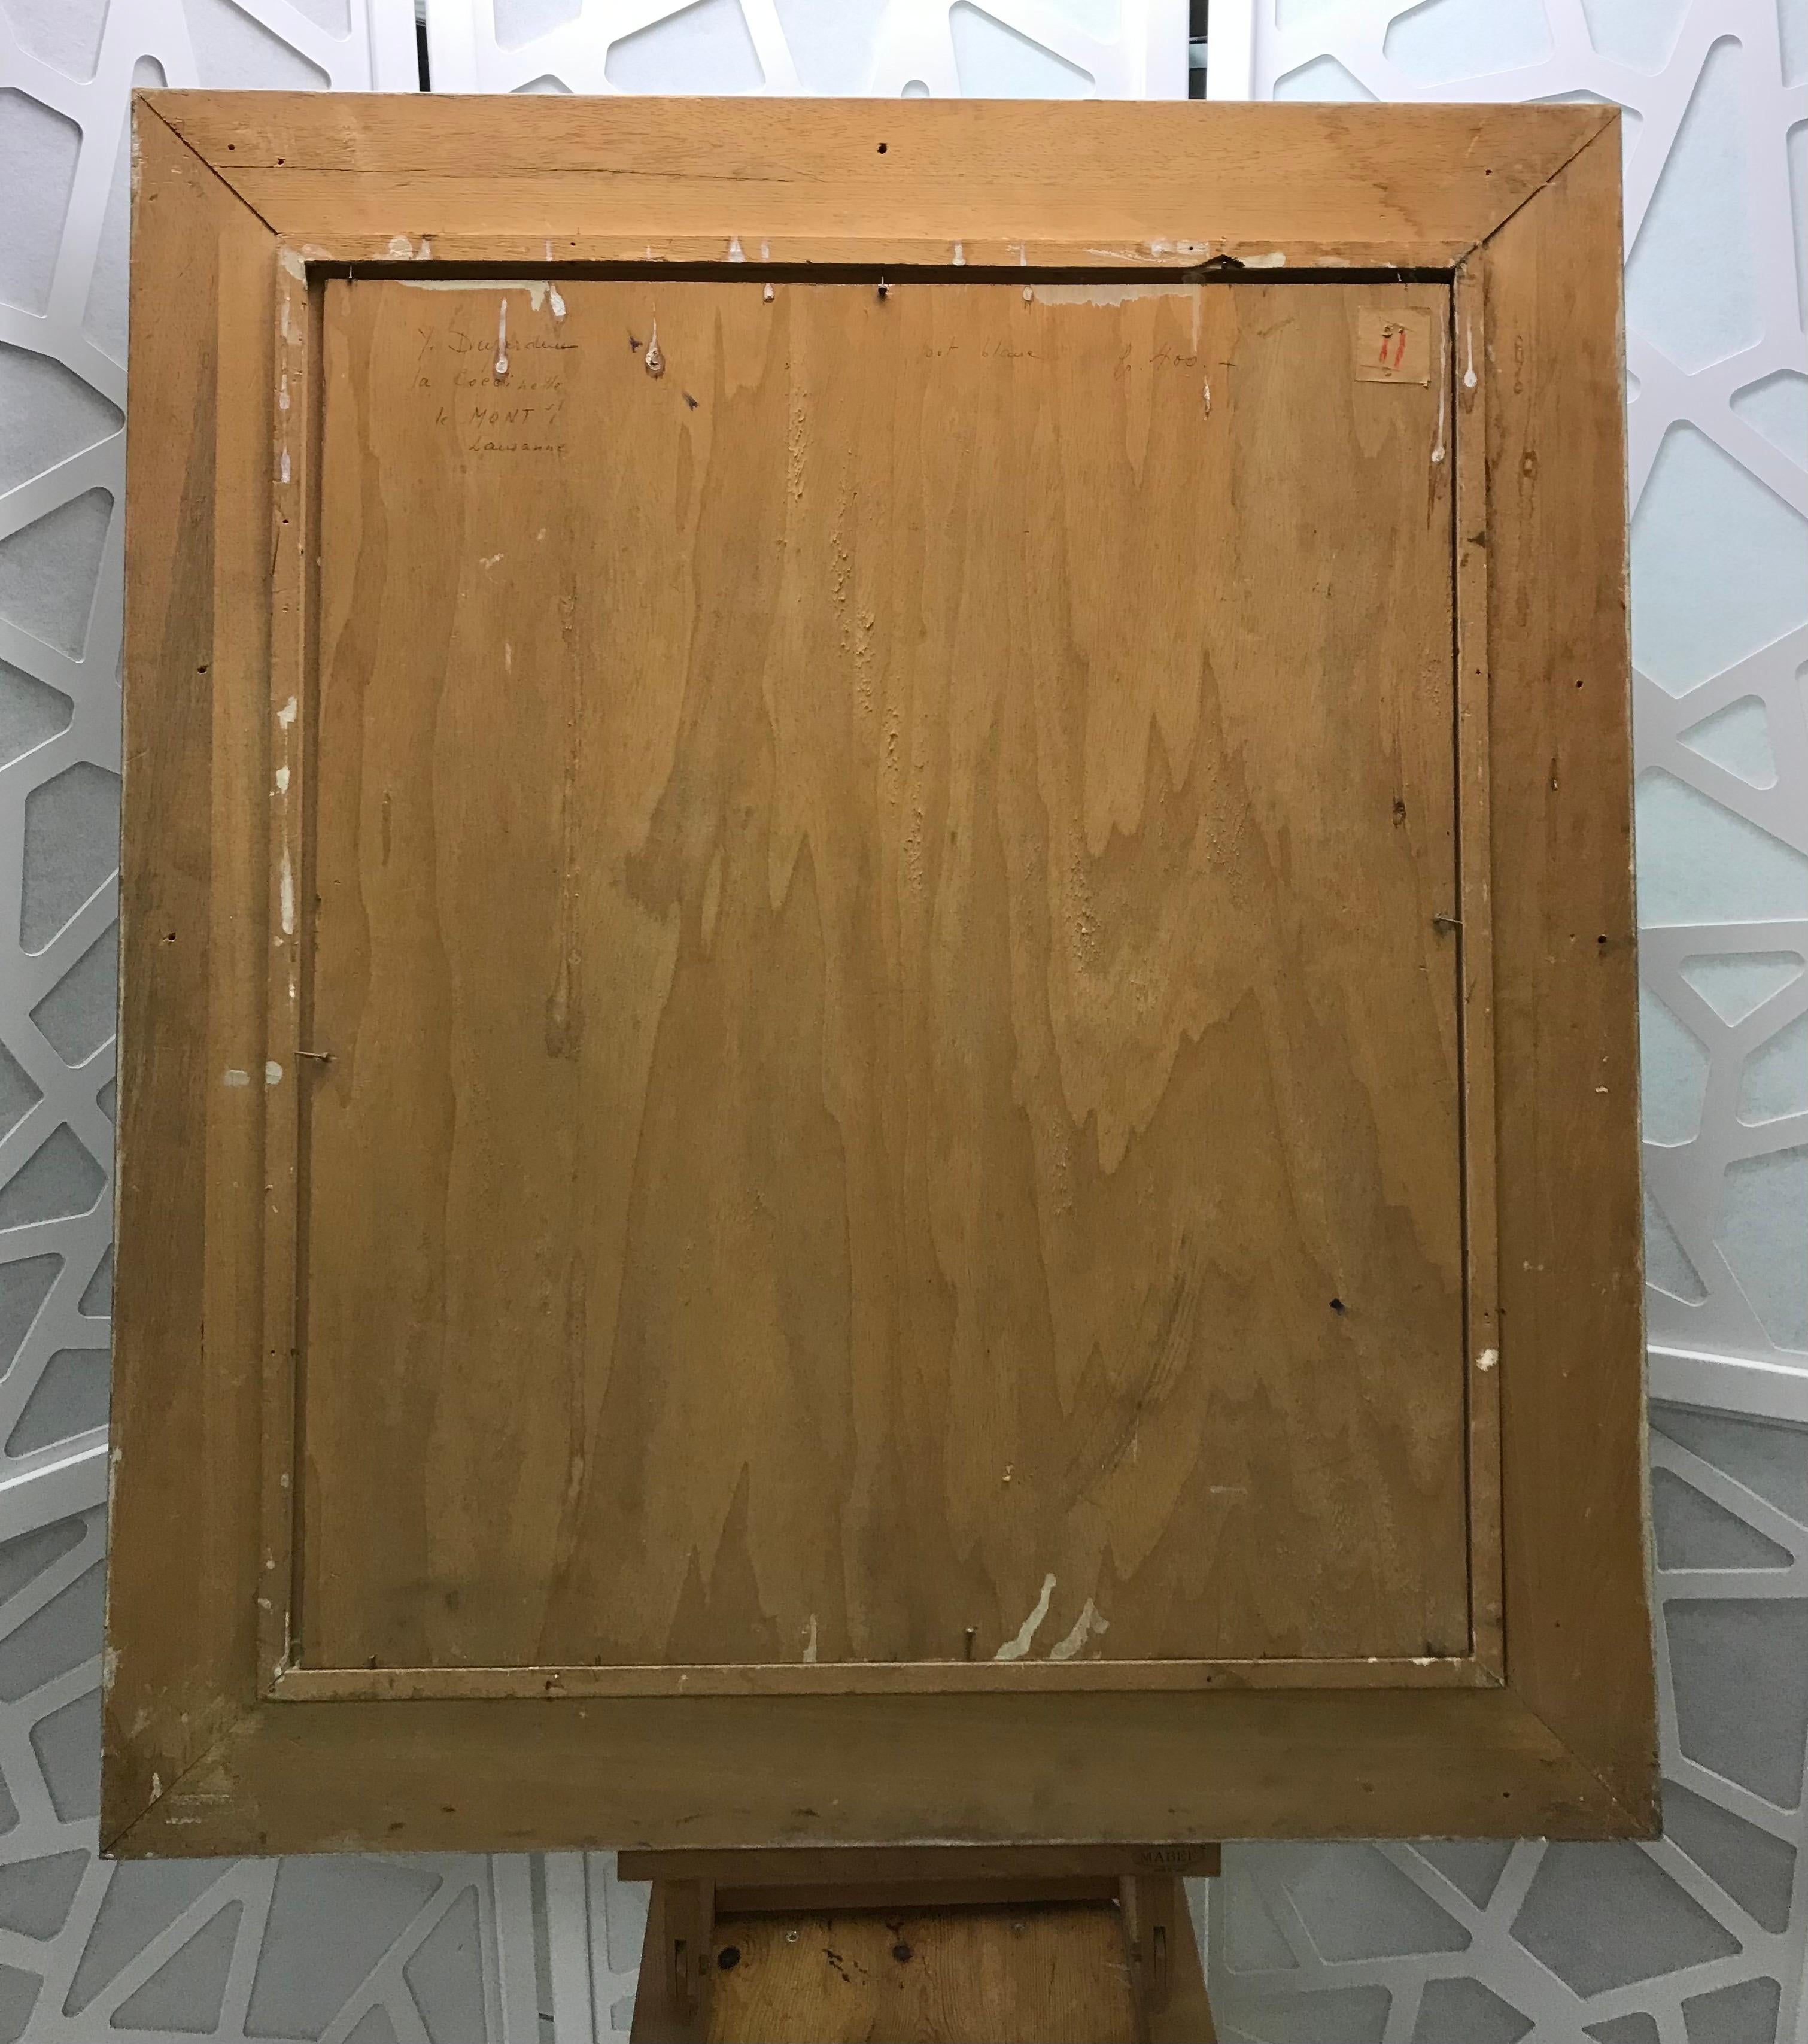 Work on wood
Beige wooden frame
83 x 72,5 x 5,5 cm